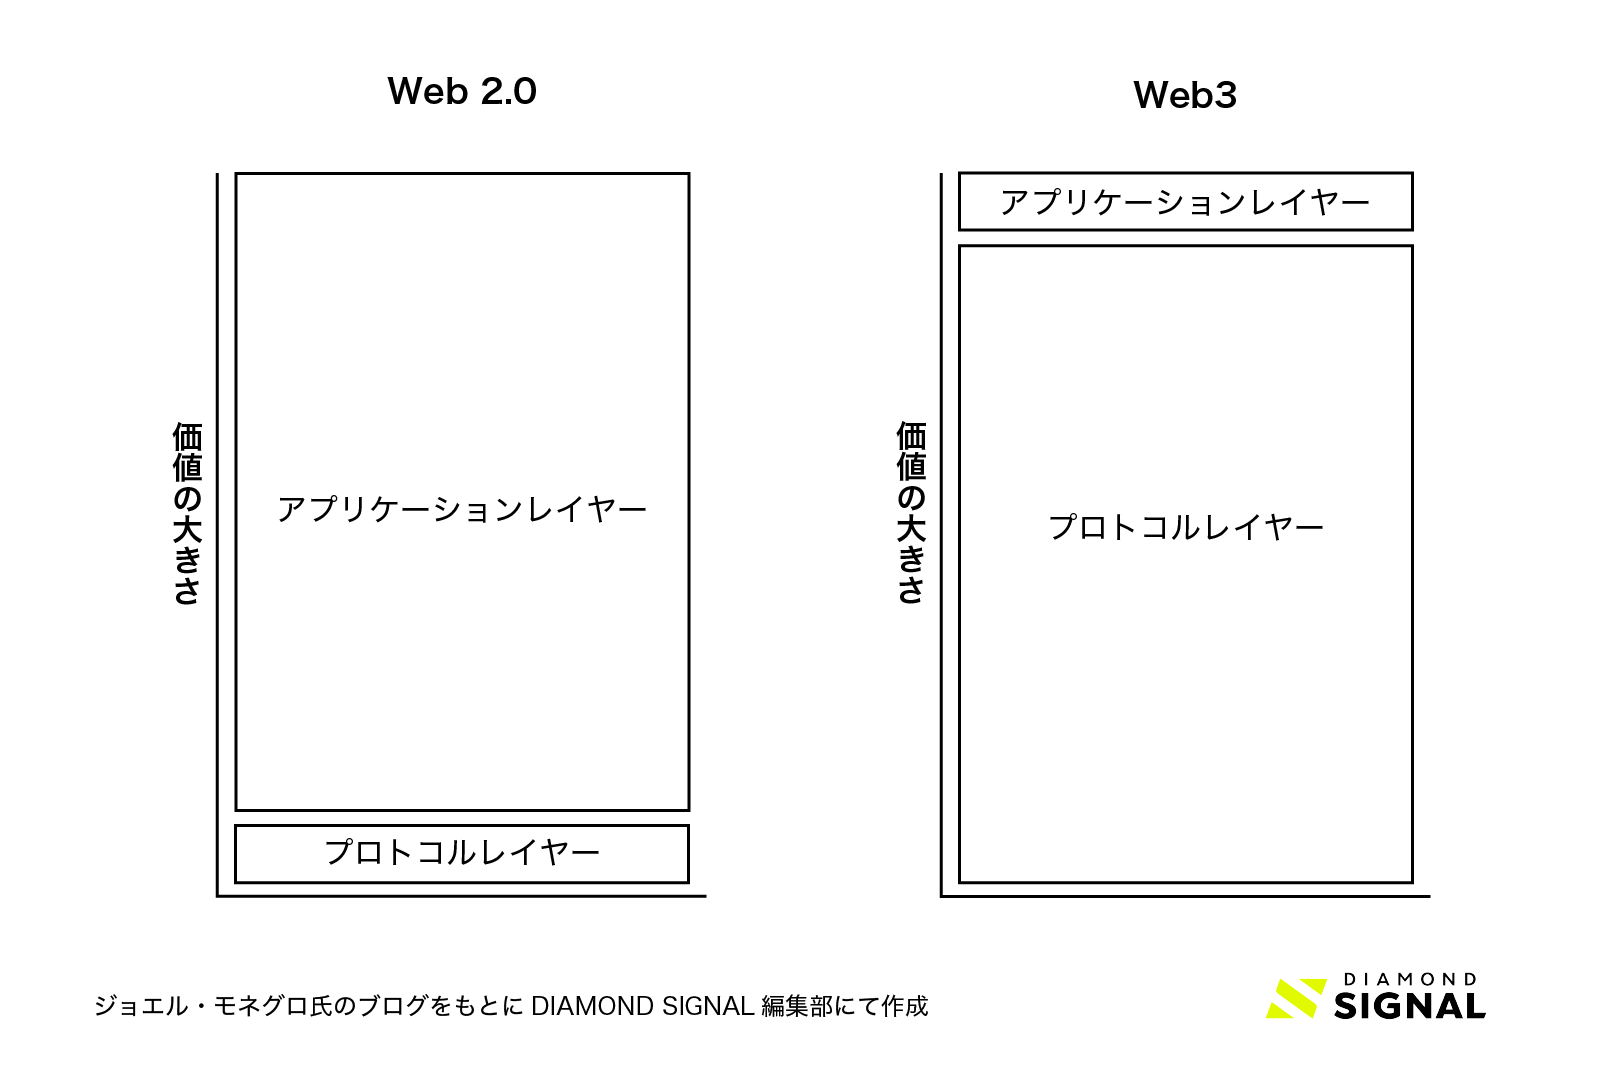 Web 2.0とWeb3のアーキテクチャーの違い